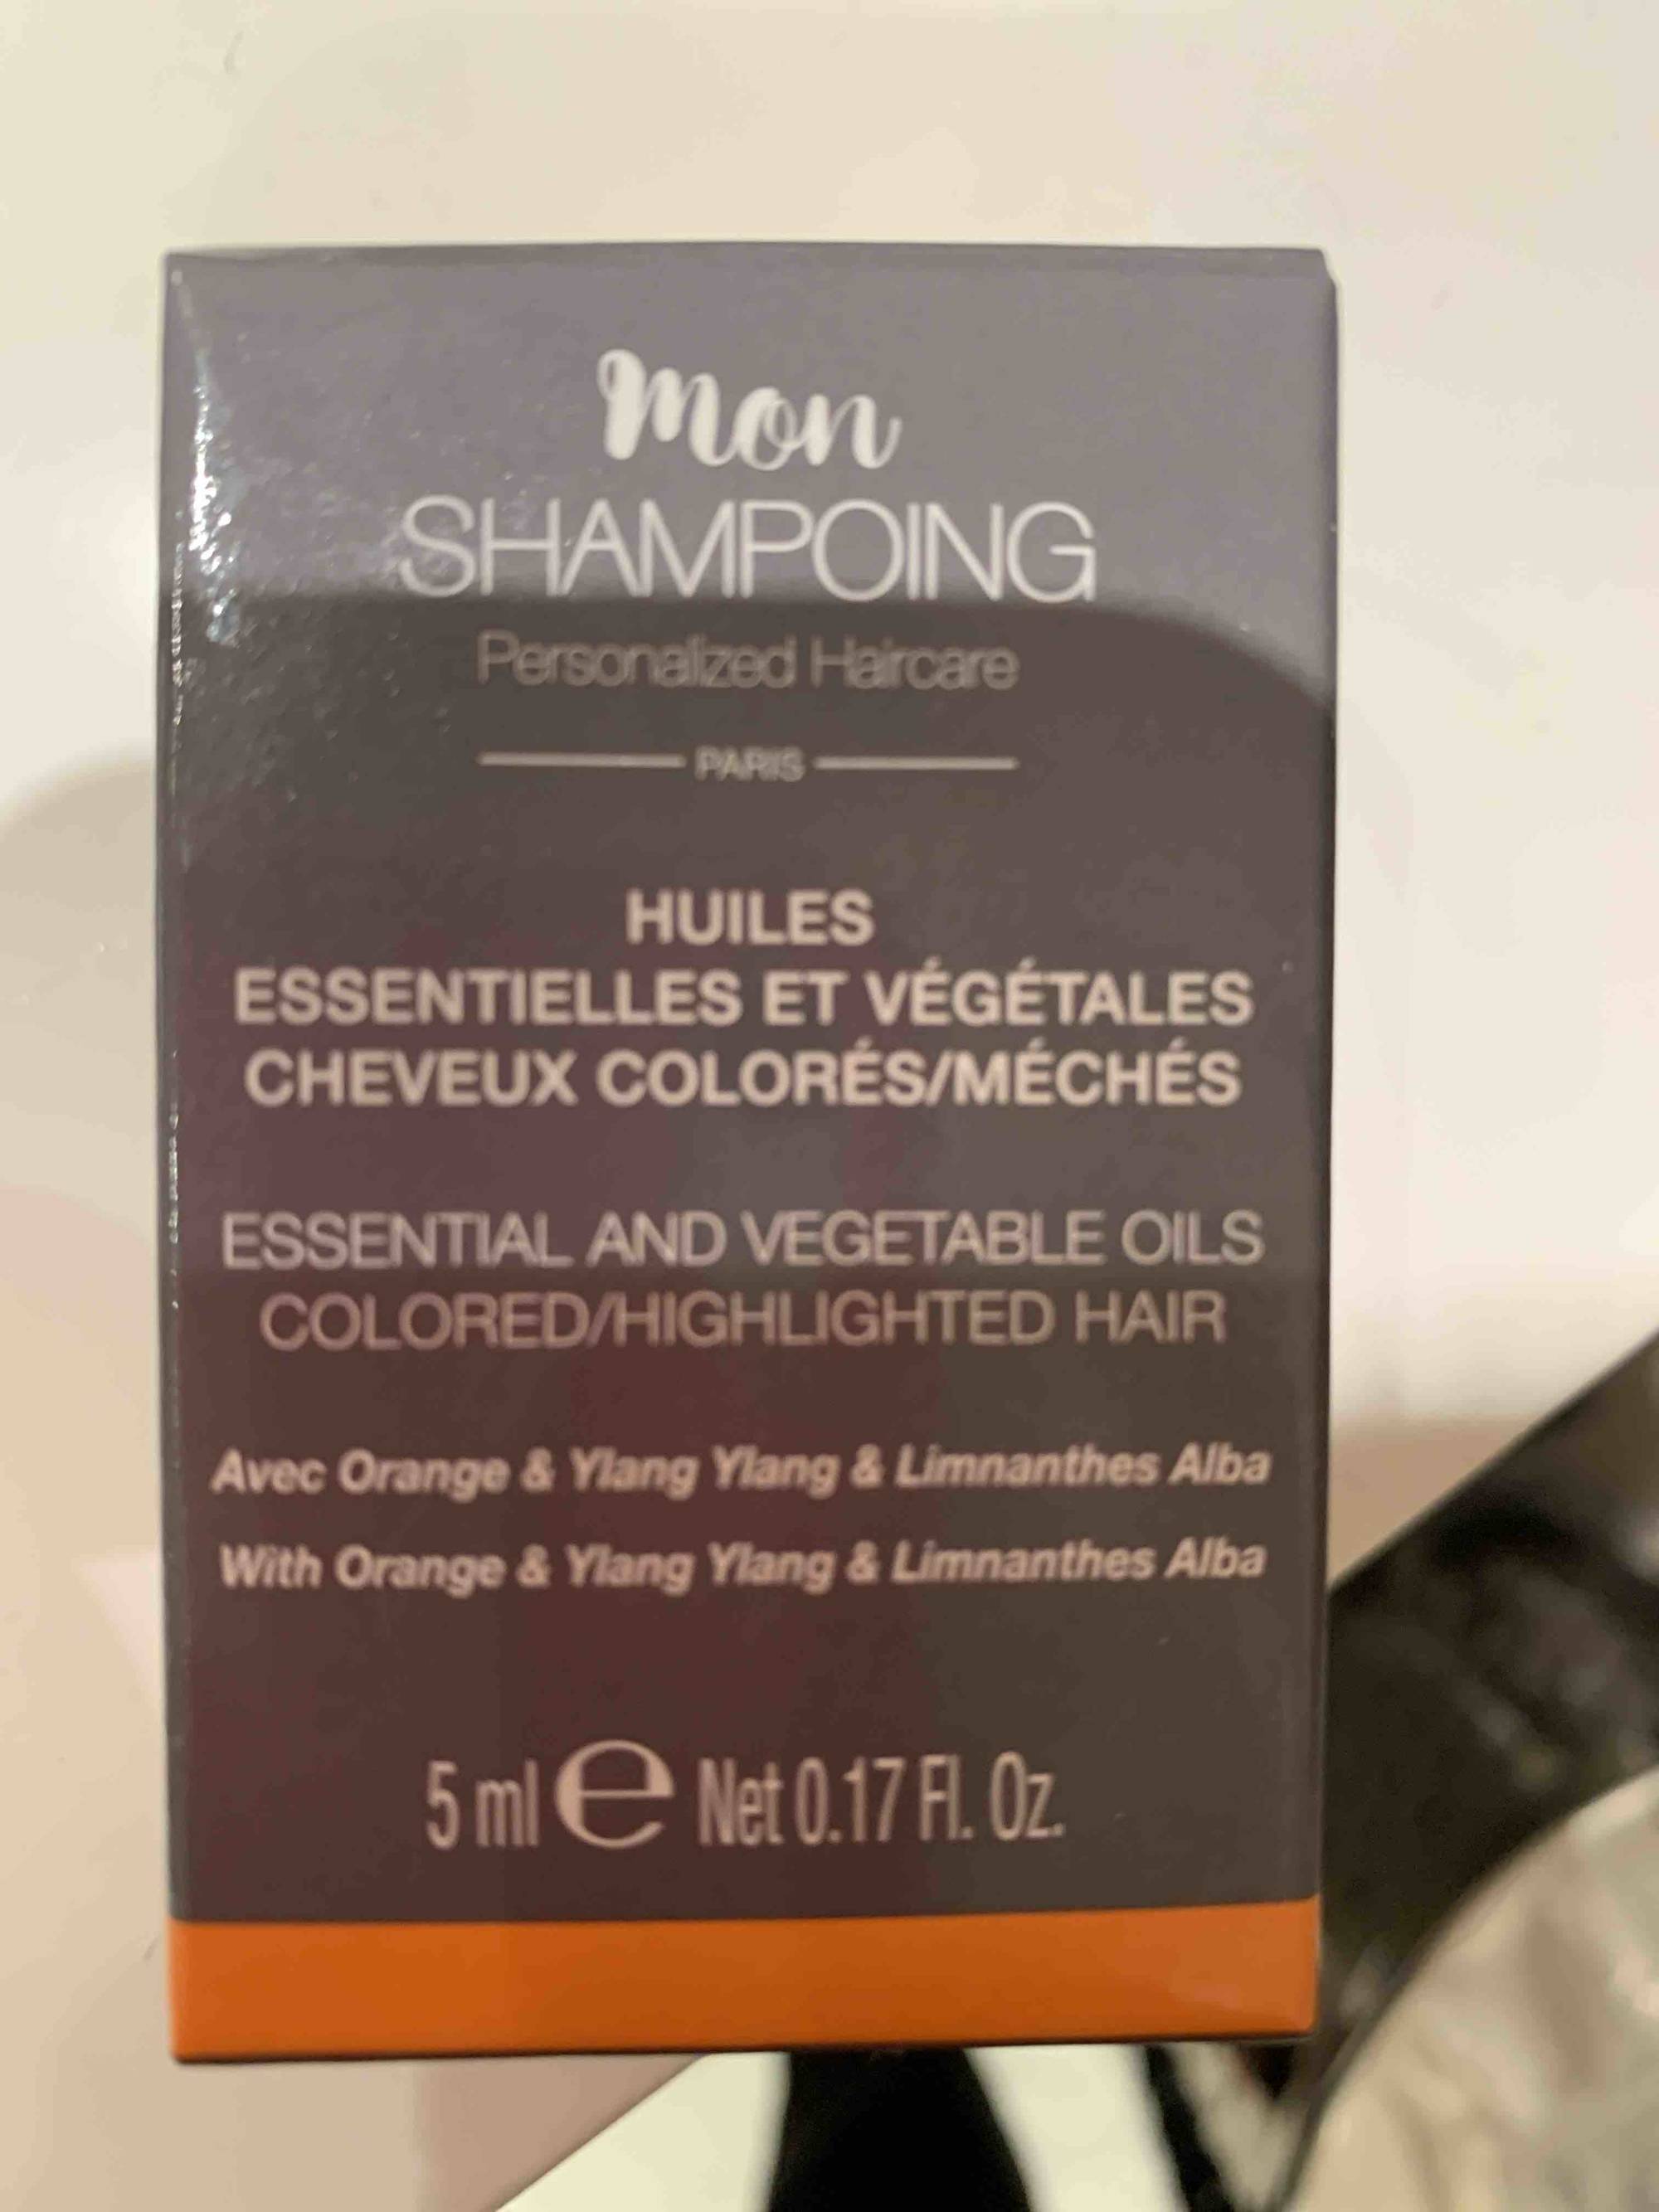 MON SHAMPOING - Huiles essentielles et végétales cheveux colorés/méchés 